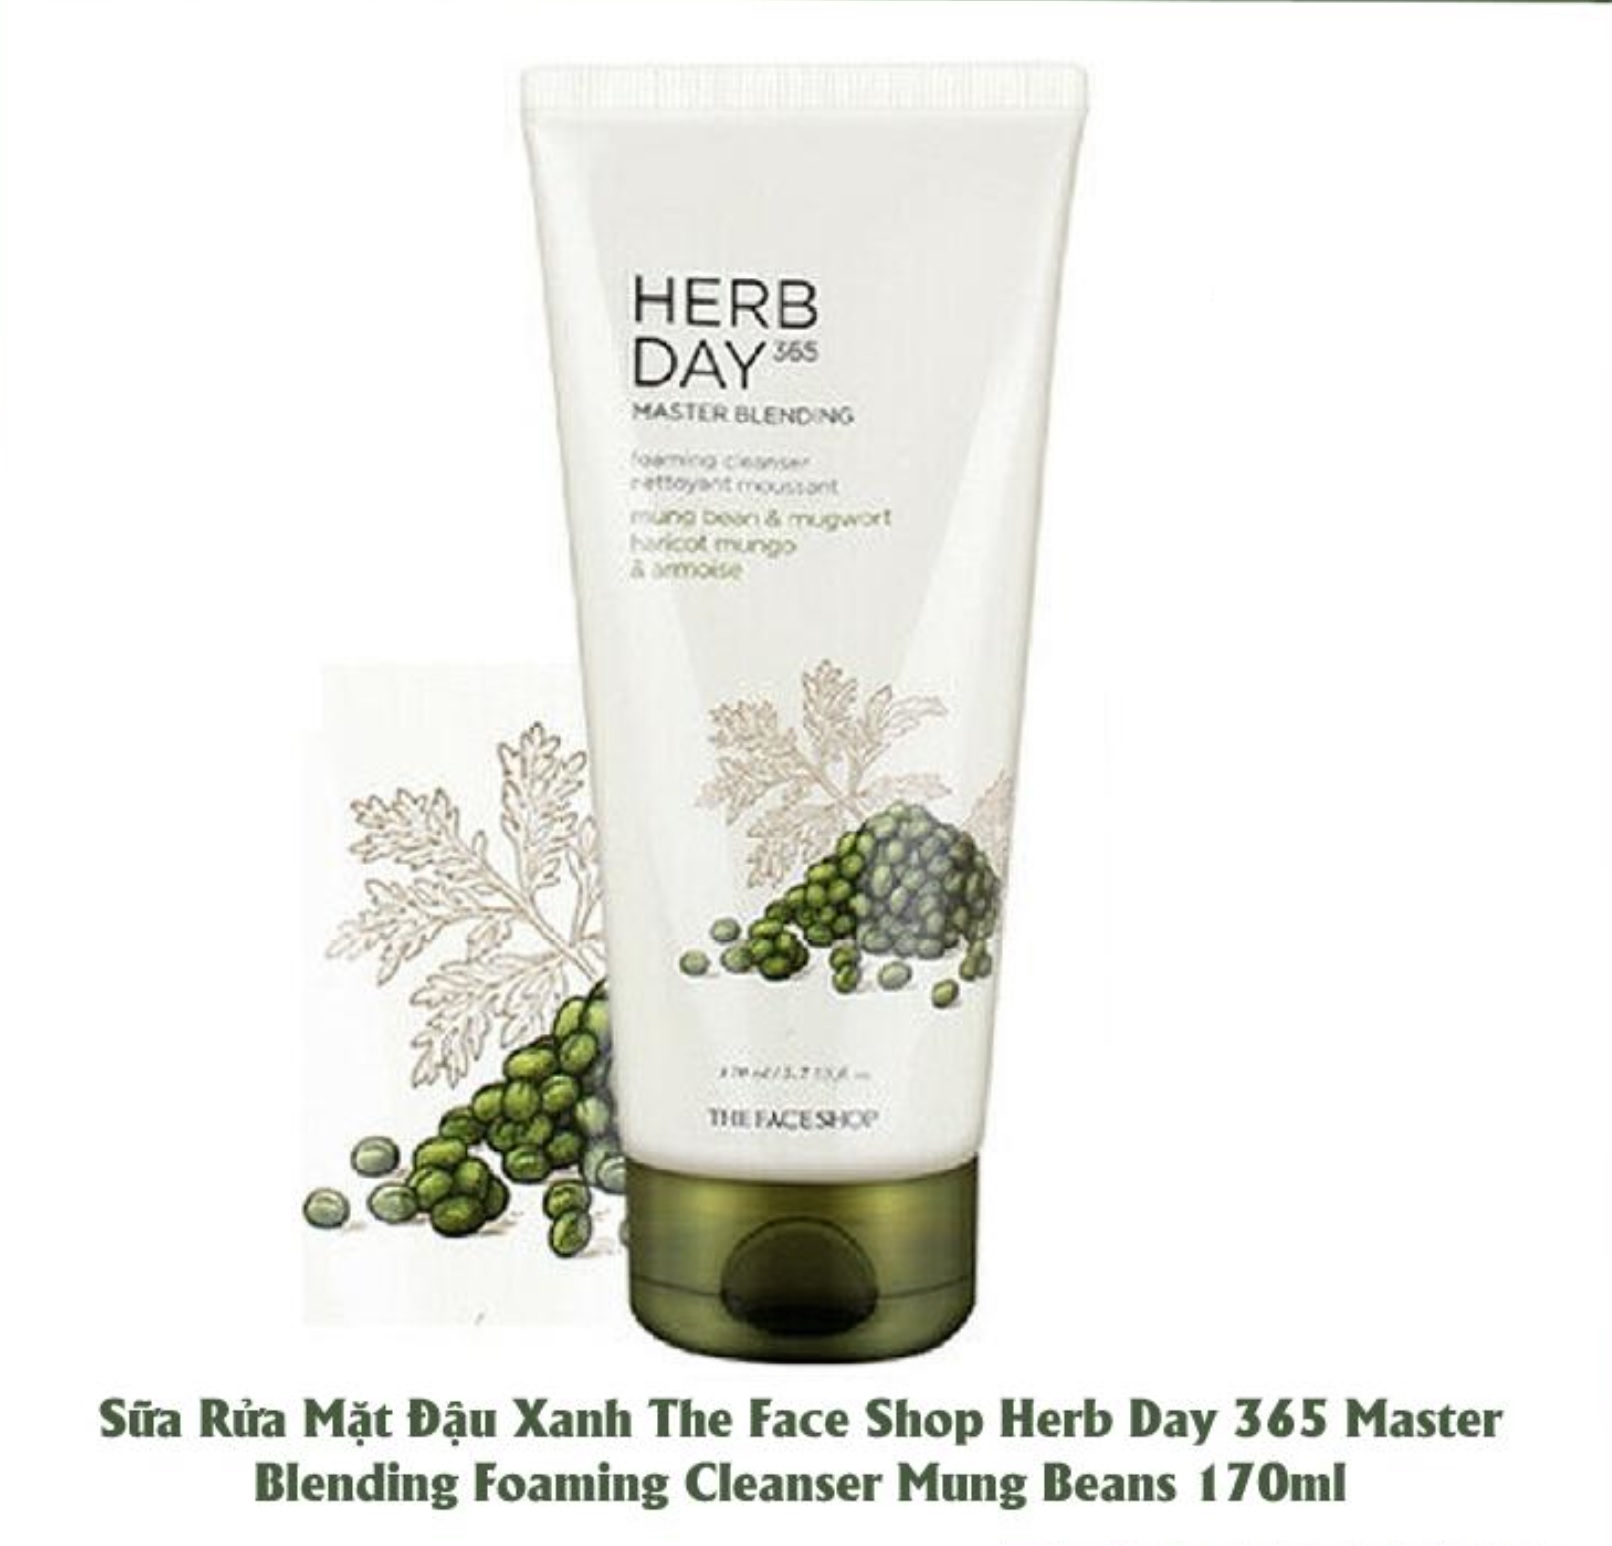 Sữa Rửa Mặt Đậu Xanh Ngải Cứu Herb Day 365 Master Blending Foaming Cleanser 170ml (the face shop) 1